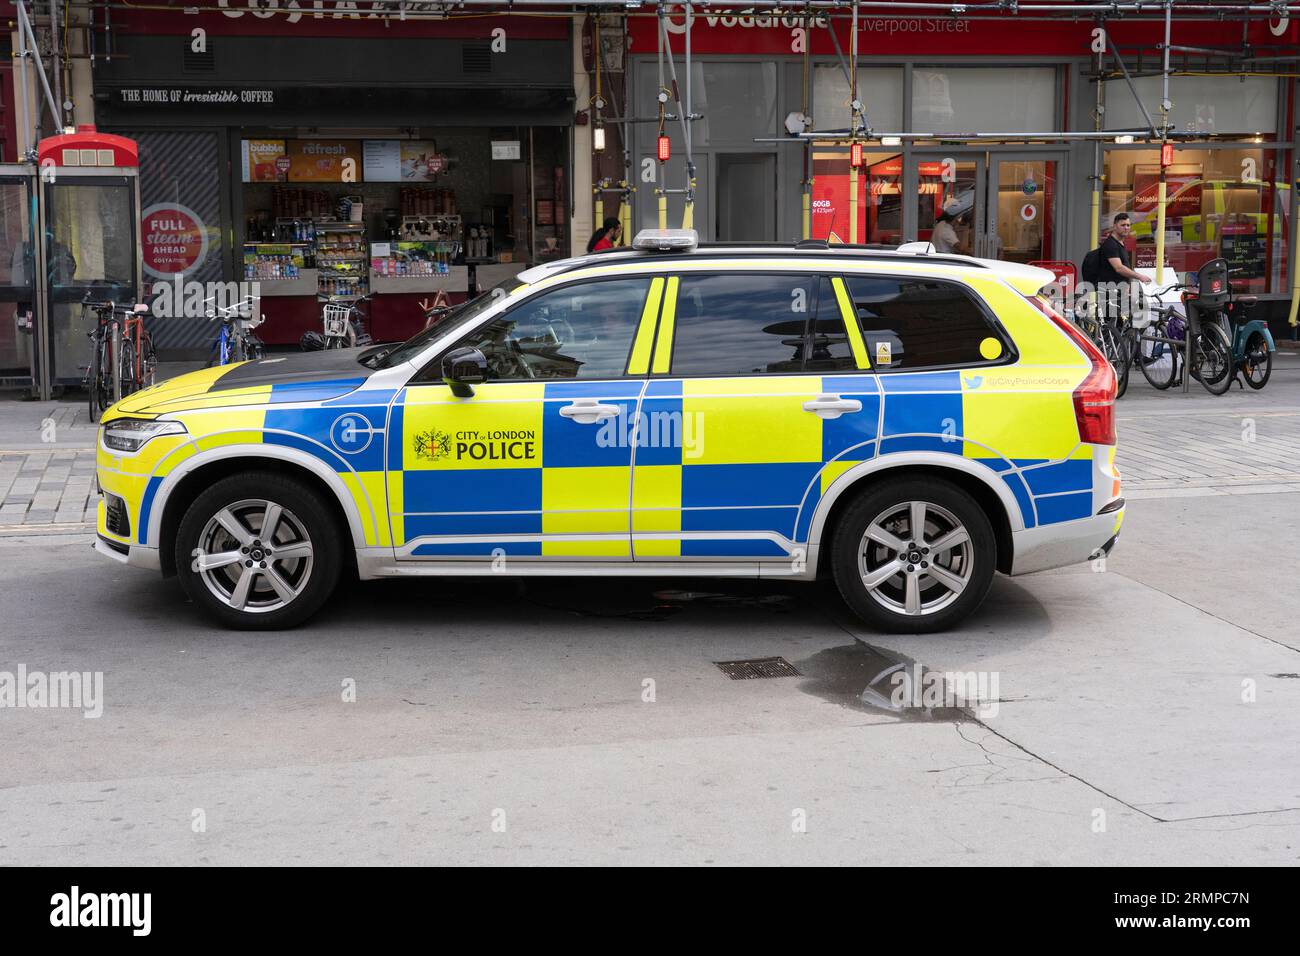 Une voiture de police garée devant Liverpool Street Station à Londres, qui fait partie de la police de la City of London. Angleterre Banque D'Images